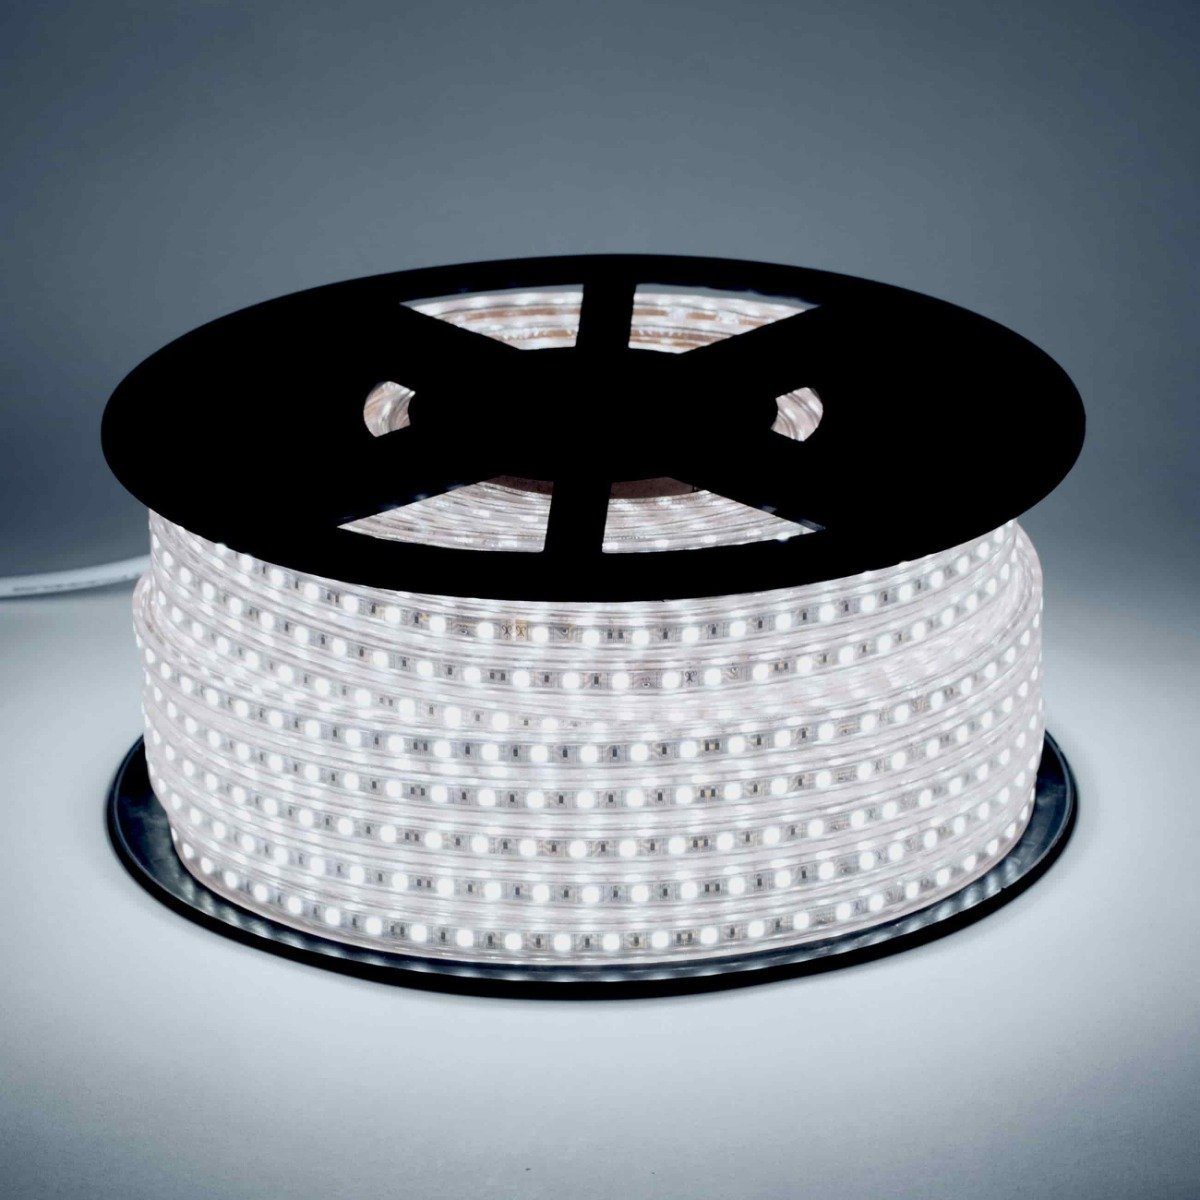 Lauflicht LED-Stripes ❘ 120 LED's/m – umoLED